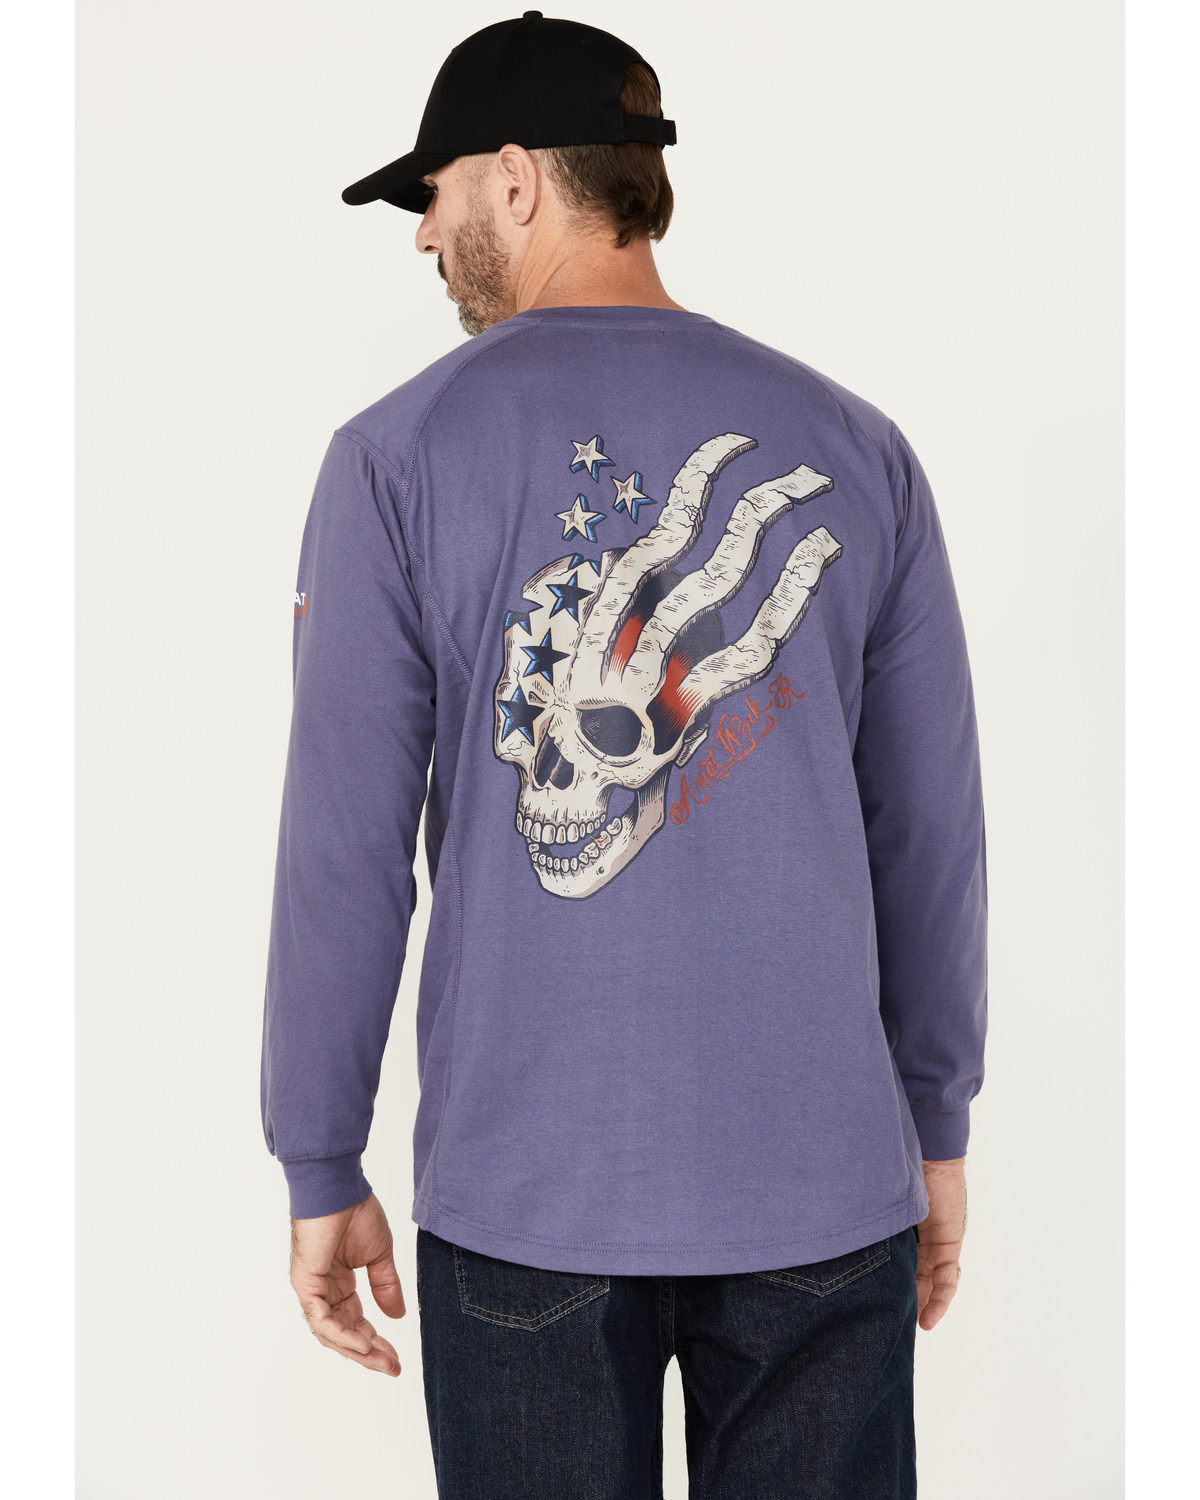 Ariat Men's FR Air USA Scream Long Sleeve Work T-Shirt